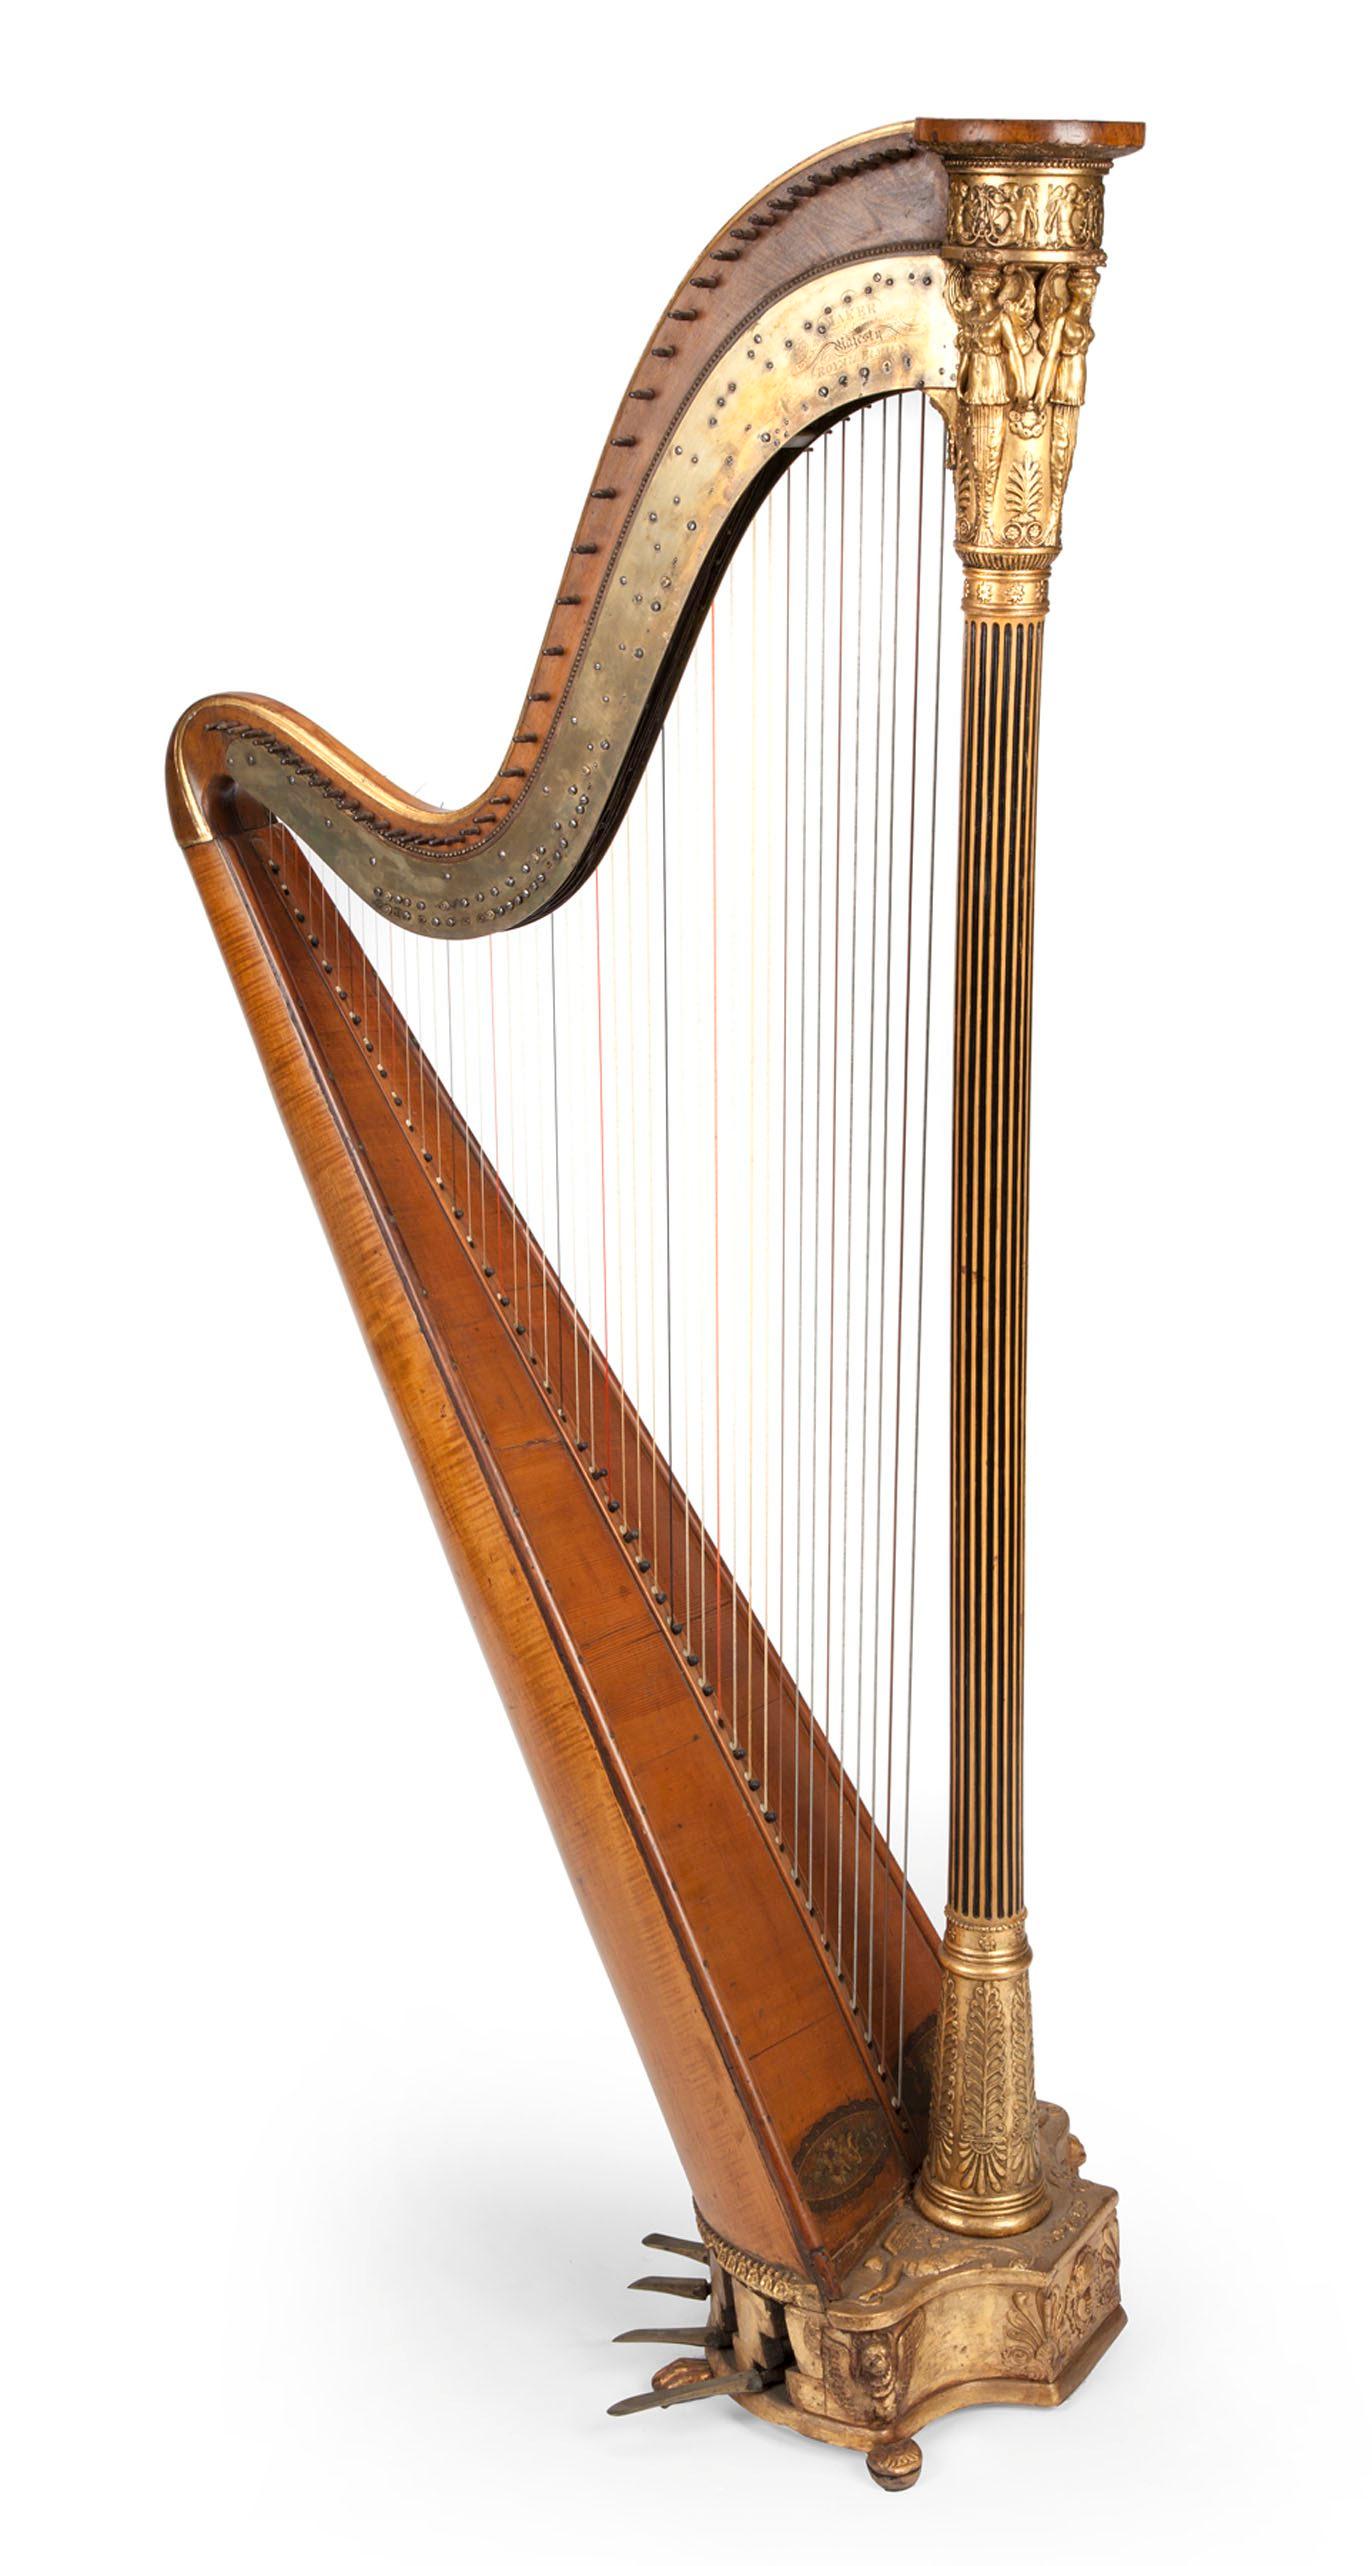 En harpa Taylor Swift faiblesse för gamla ting skapade myror i Harrys brallor